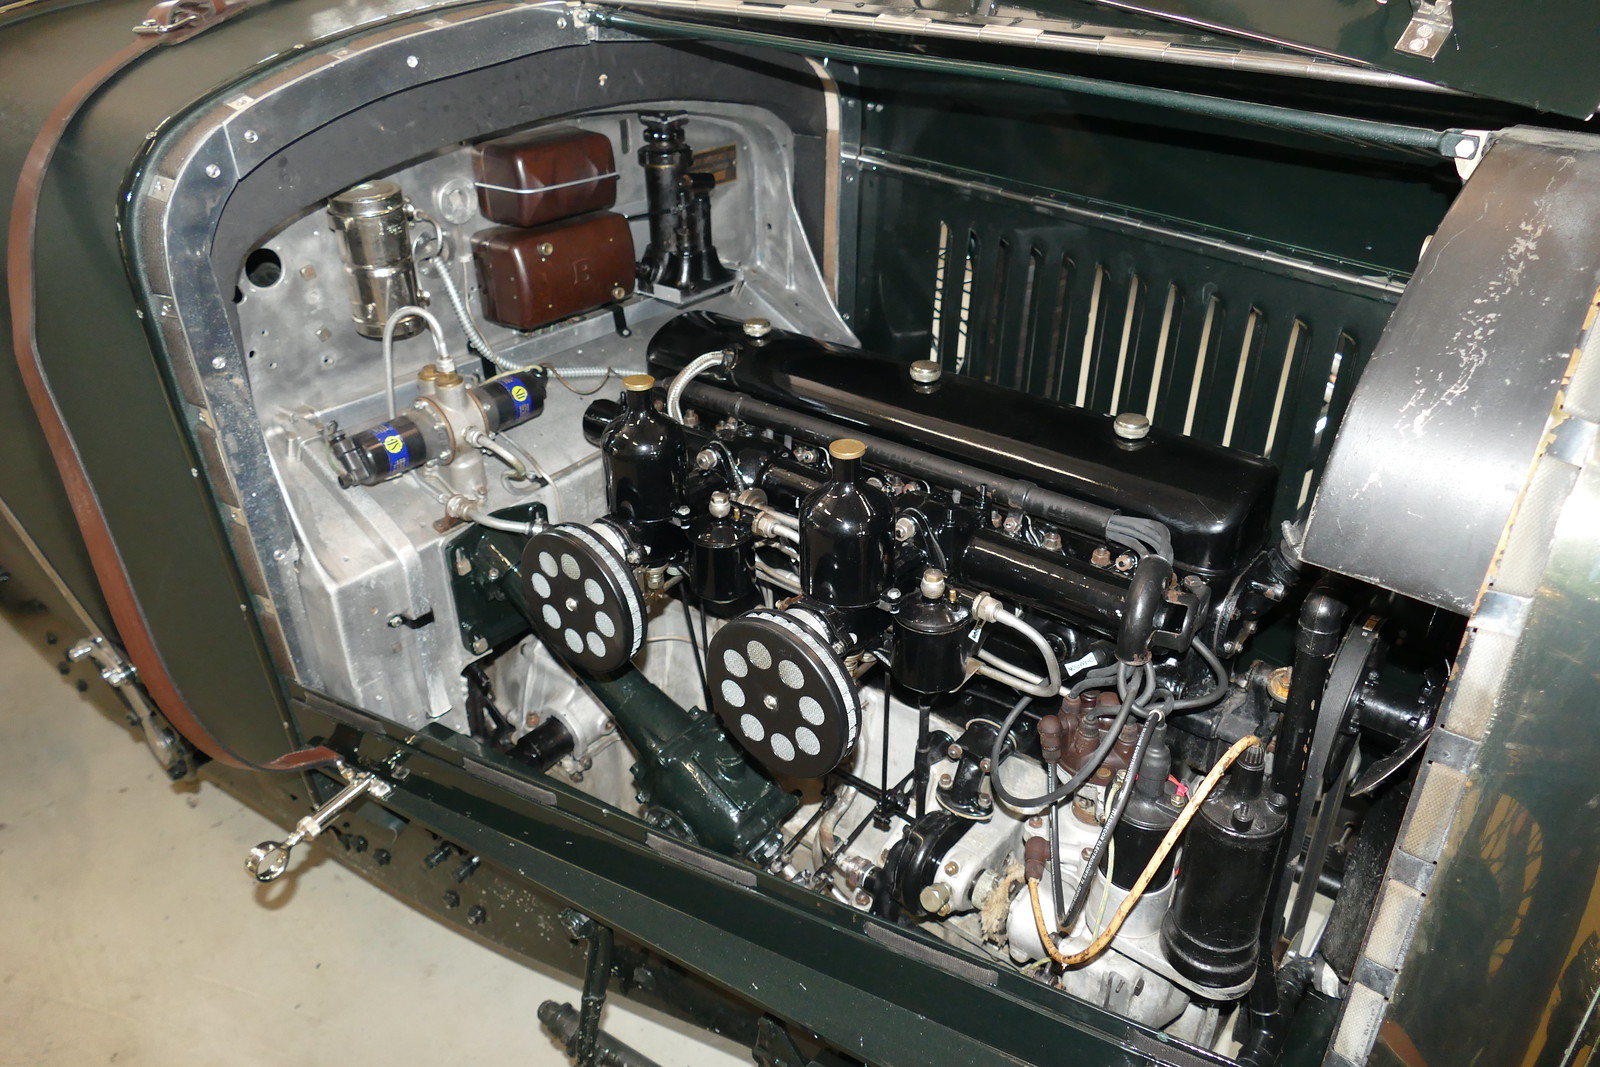 Bentley 4.25 Derby Lemans 1937